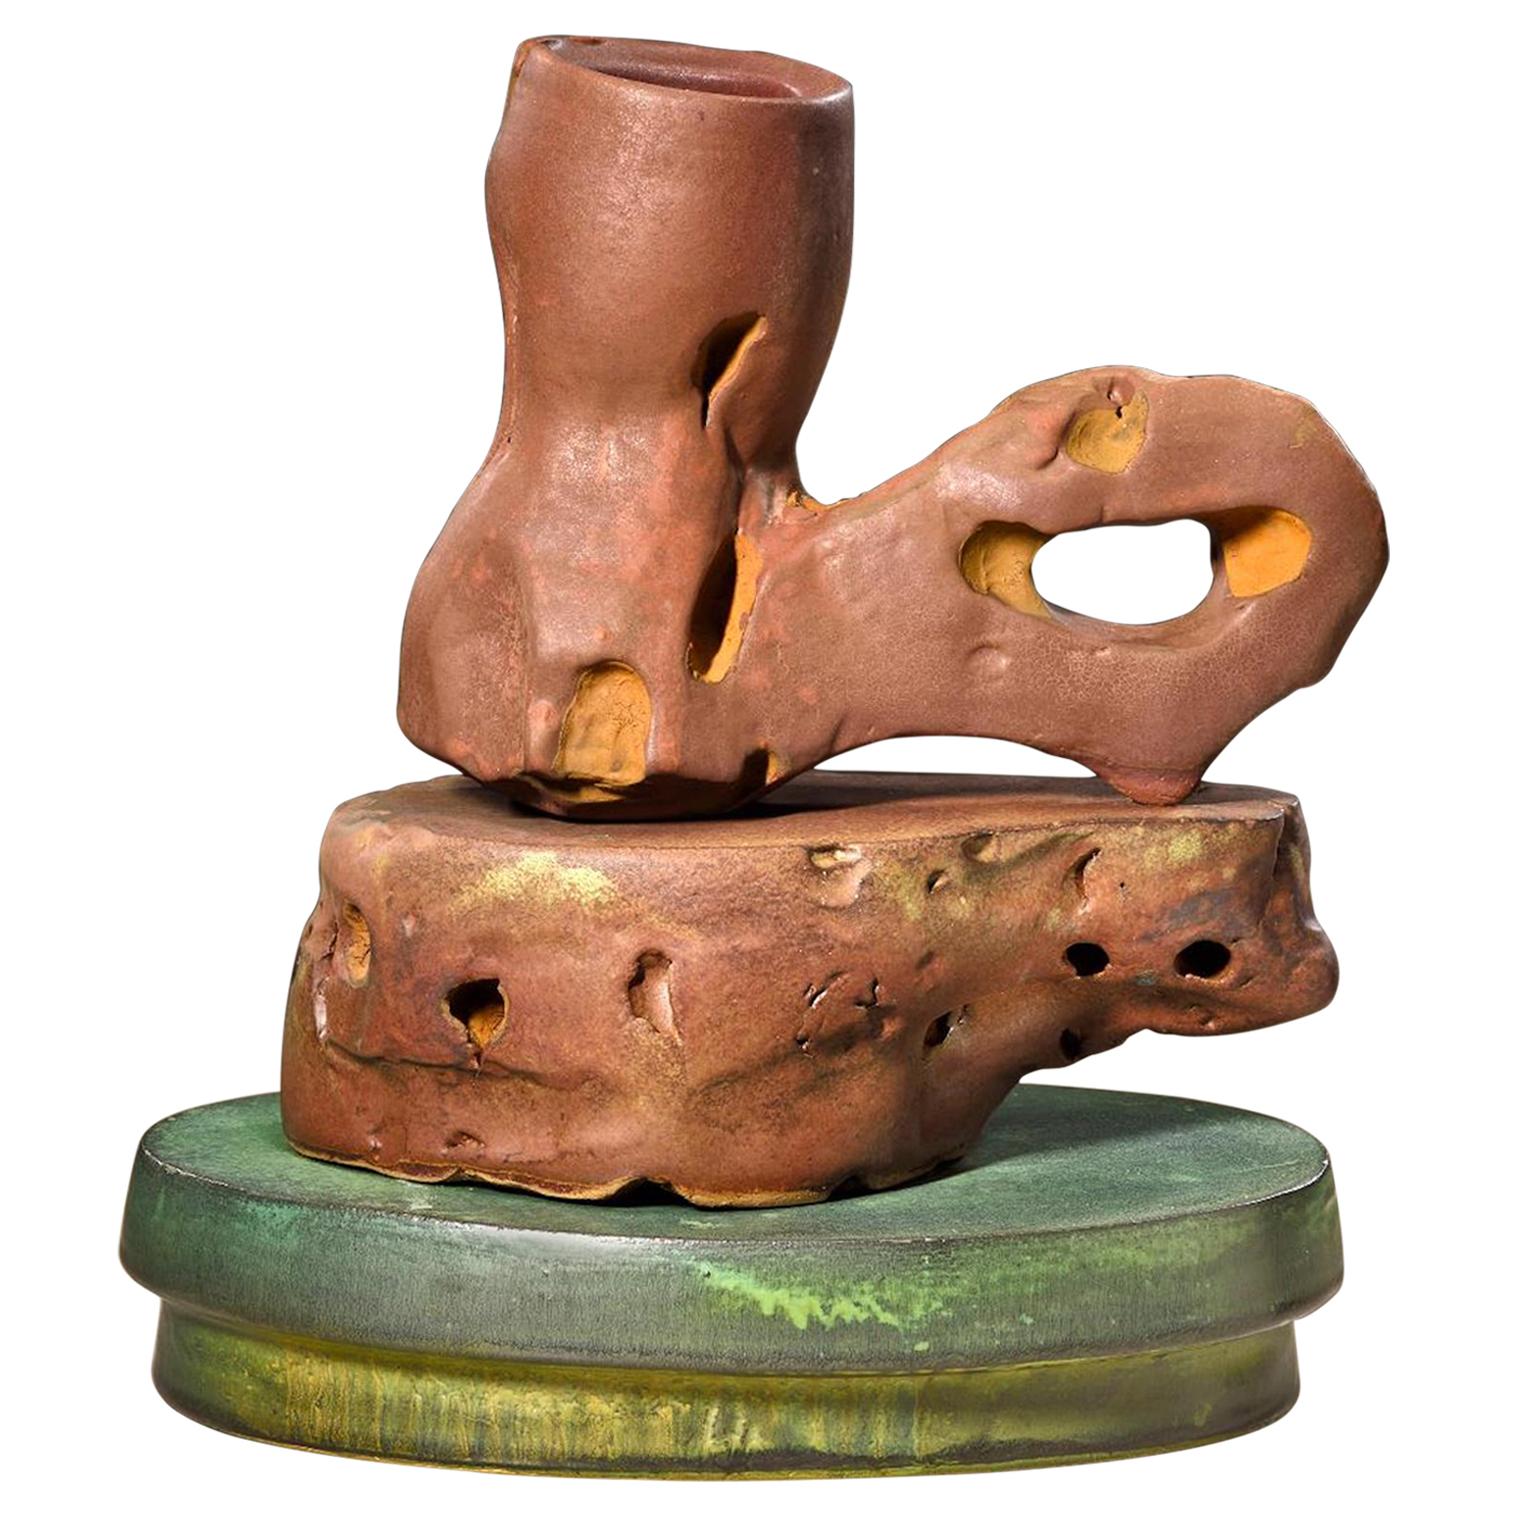 Richard Hirsch, Keramik-Skulptur eines Gelehrten, Bergbecher-Skulptur #51, 2018